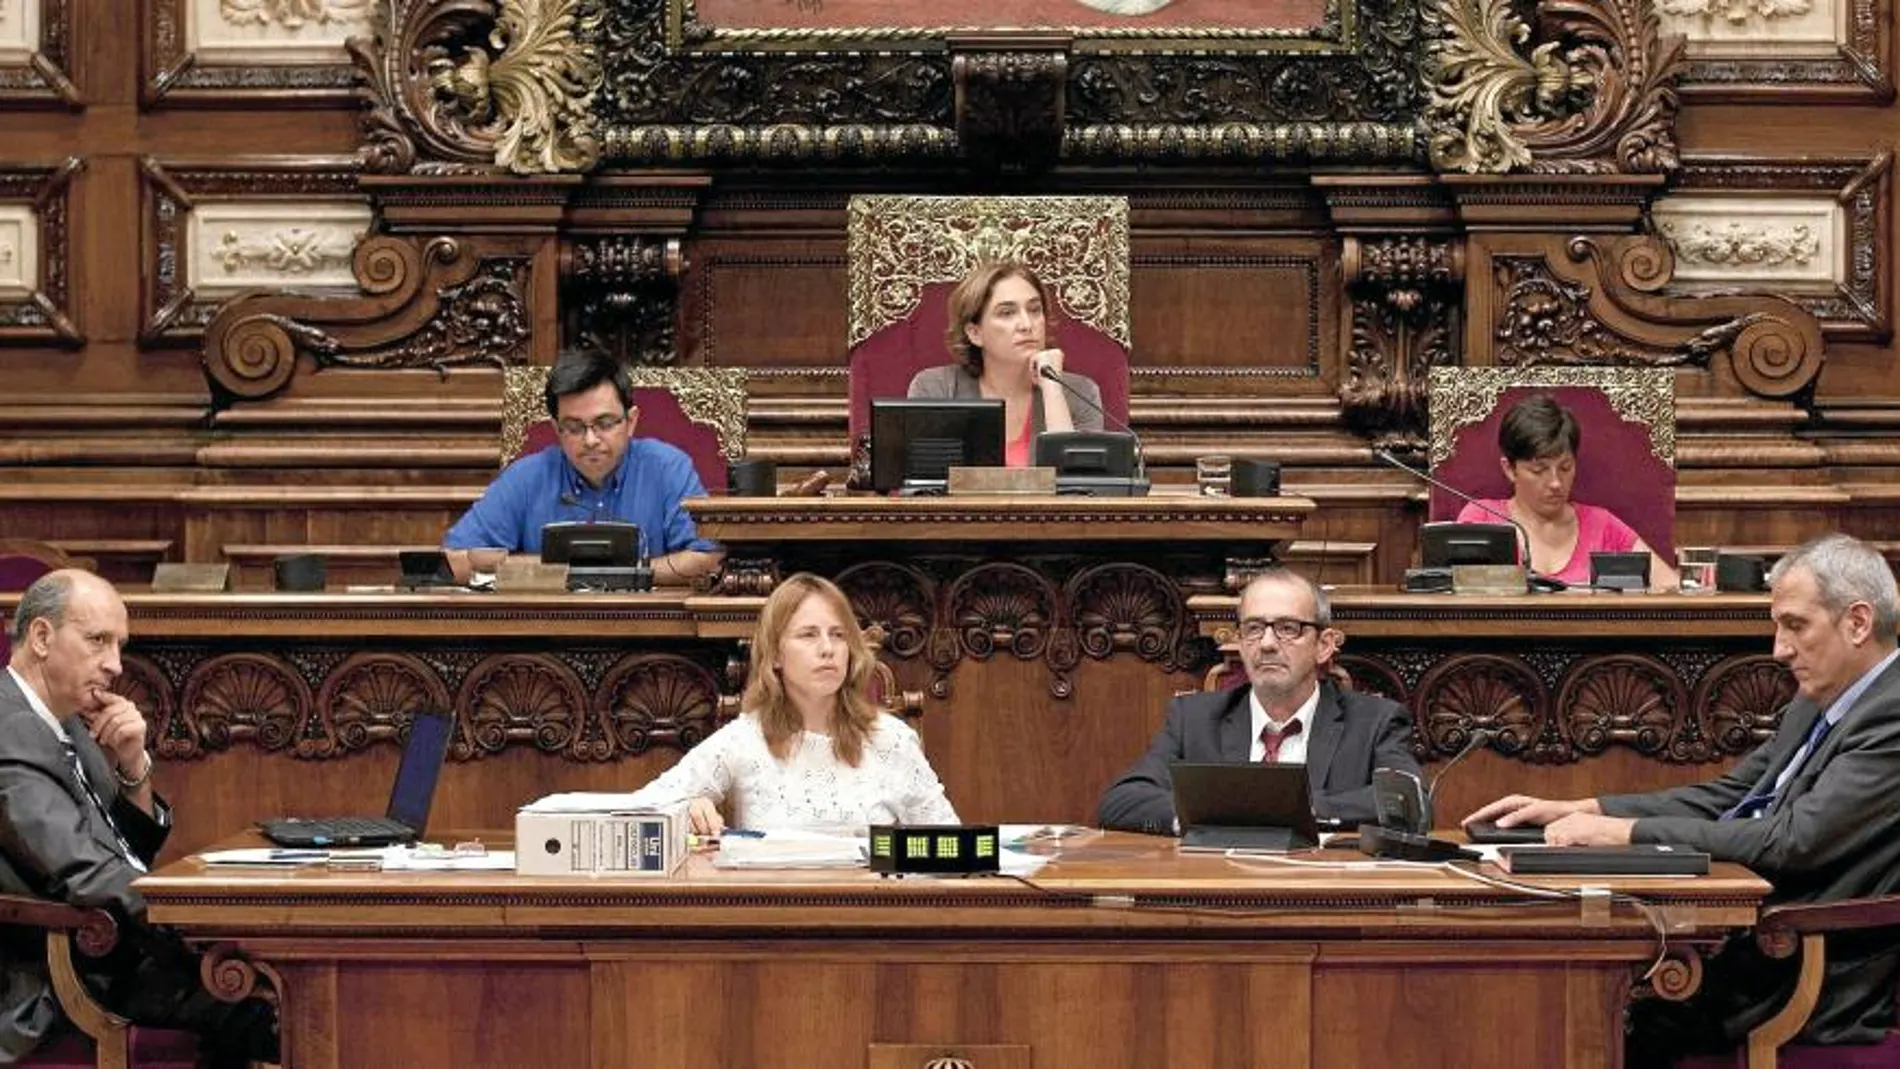 El pleno del Ayuntamiento decidió por unanimidad retirar la máxima distinción de la ciudad a la Infanta Cristina y a Pujol